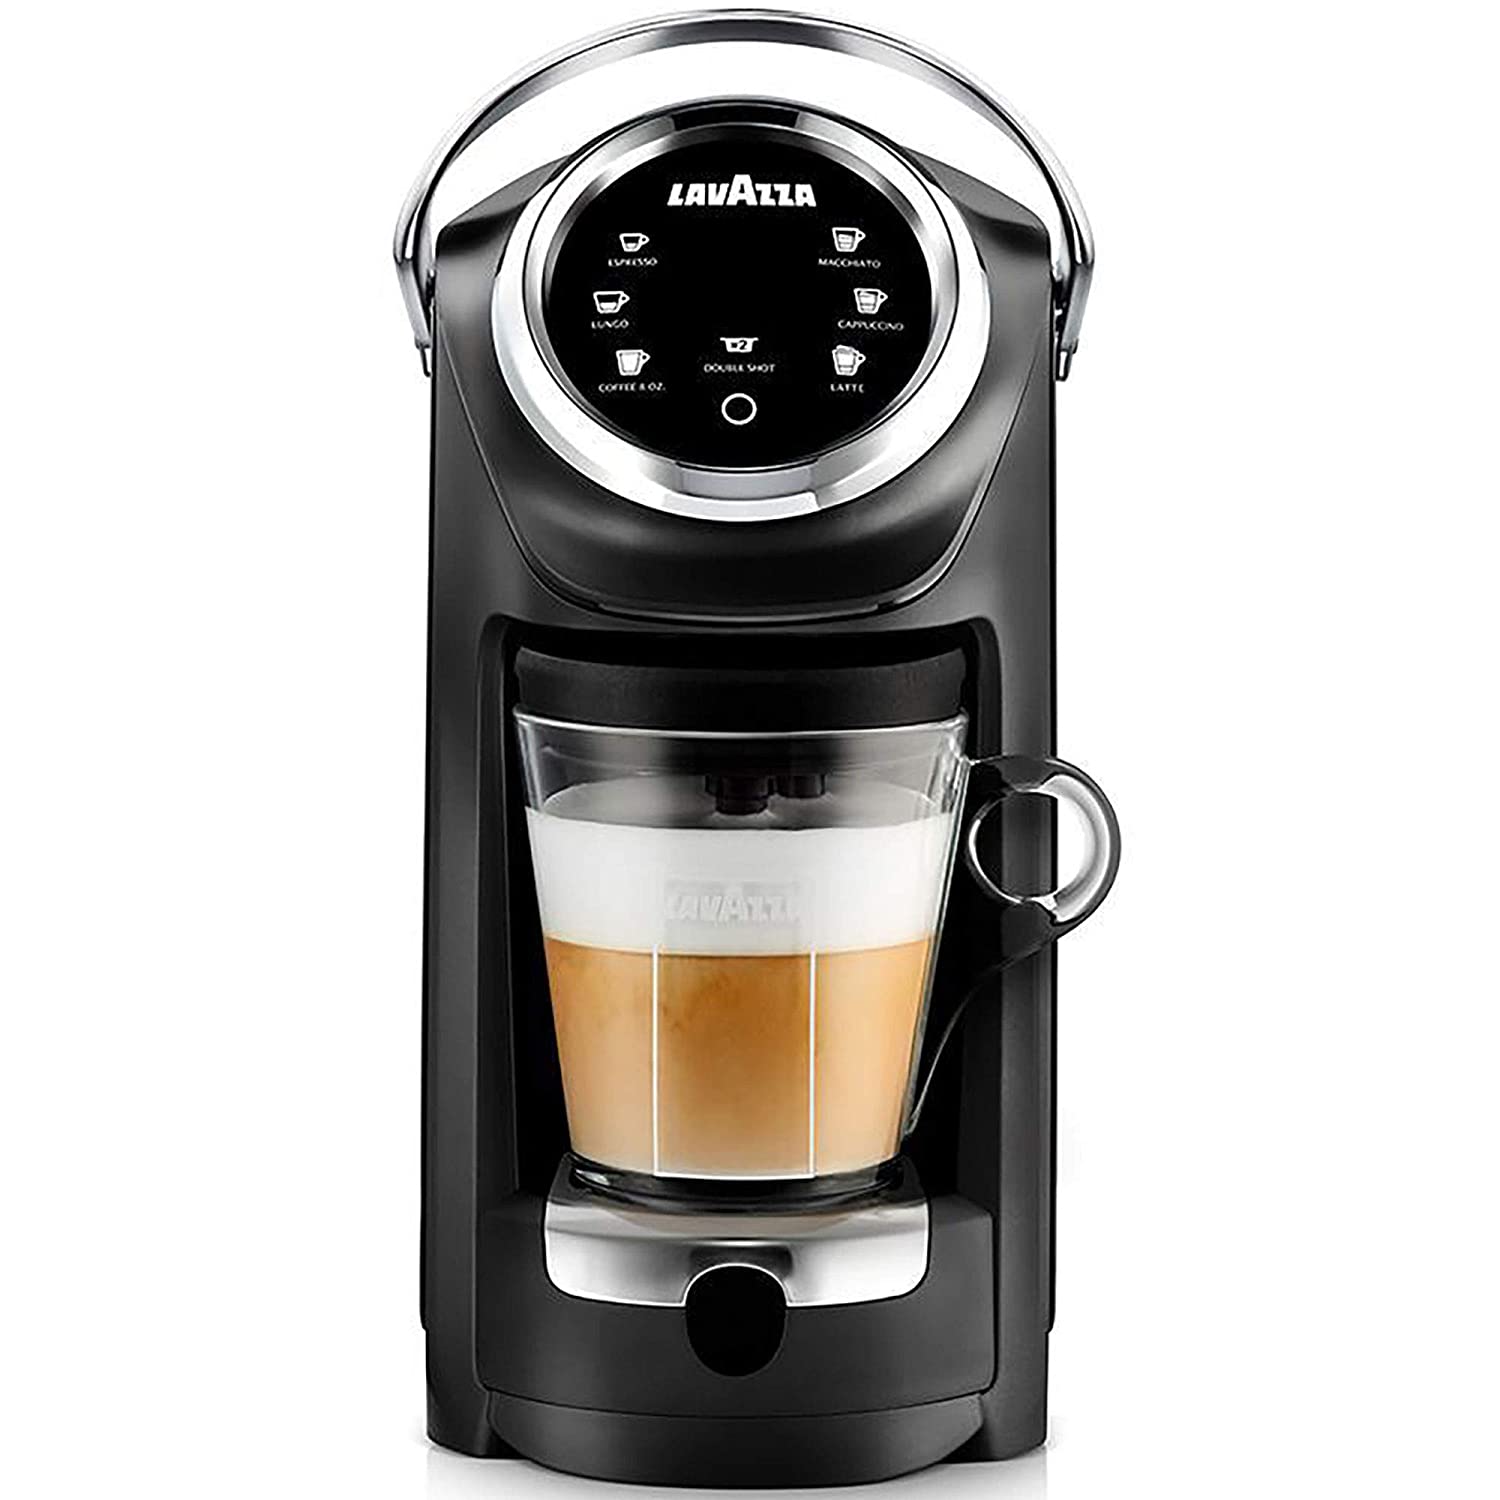 Lavazza Expert咖啡包Classy Plus多合一咖啡机LB 400 + 1个迎宾套件，包括36胶囊+ 1个额外容器